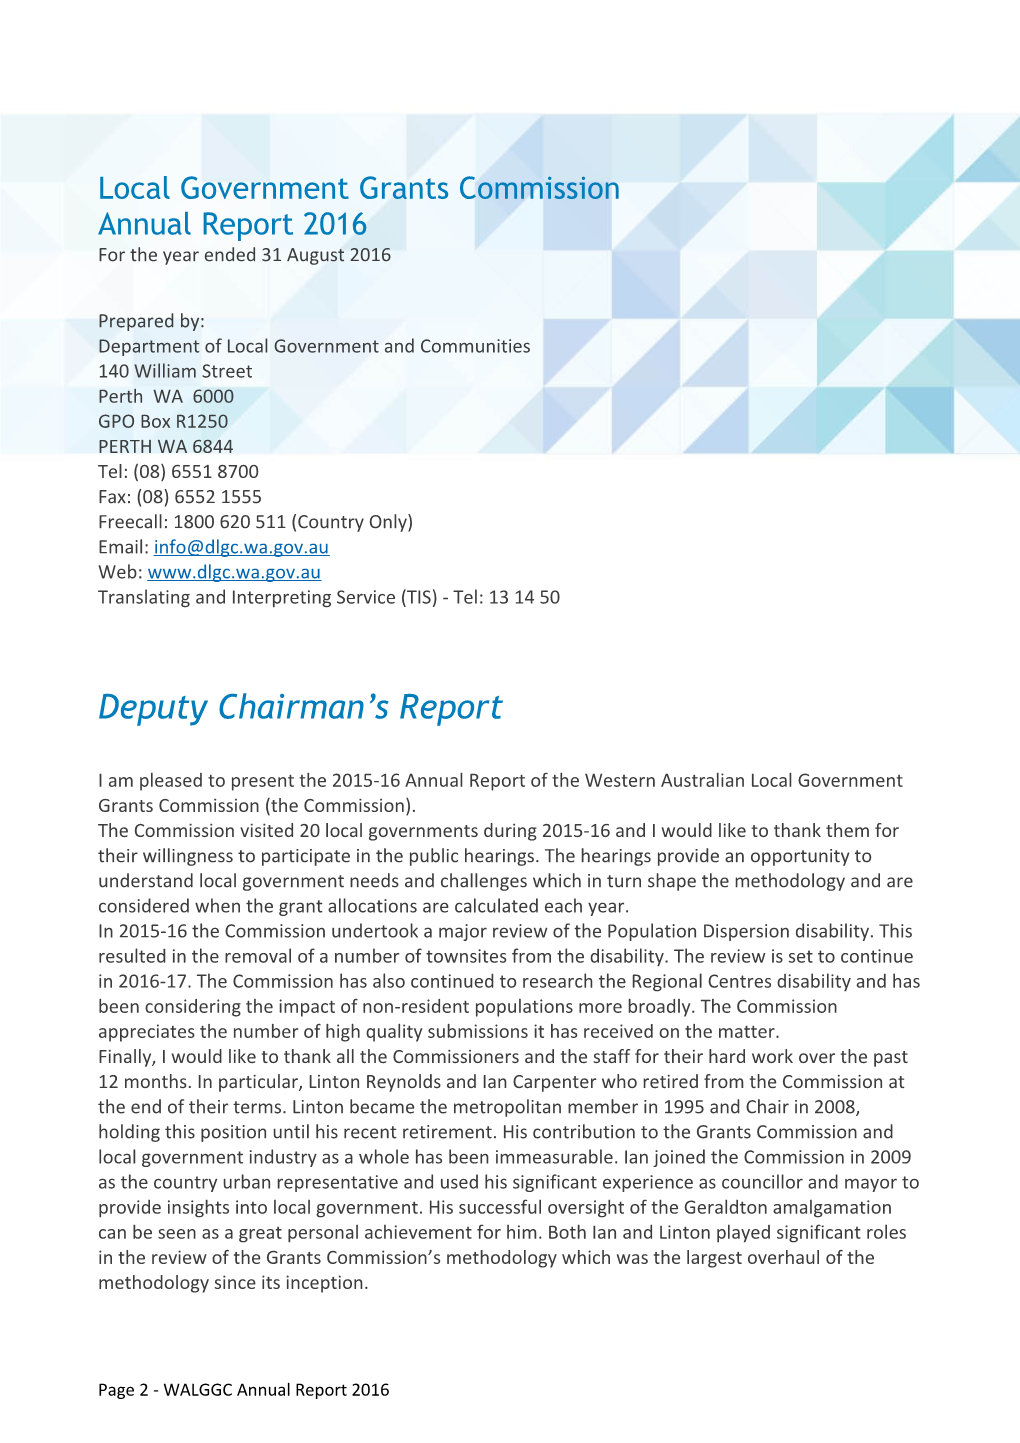 WA Local Government Grants Commission Annual Report 2016